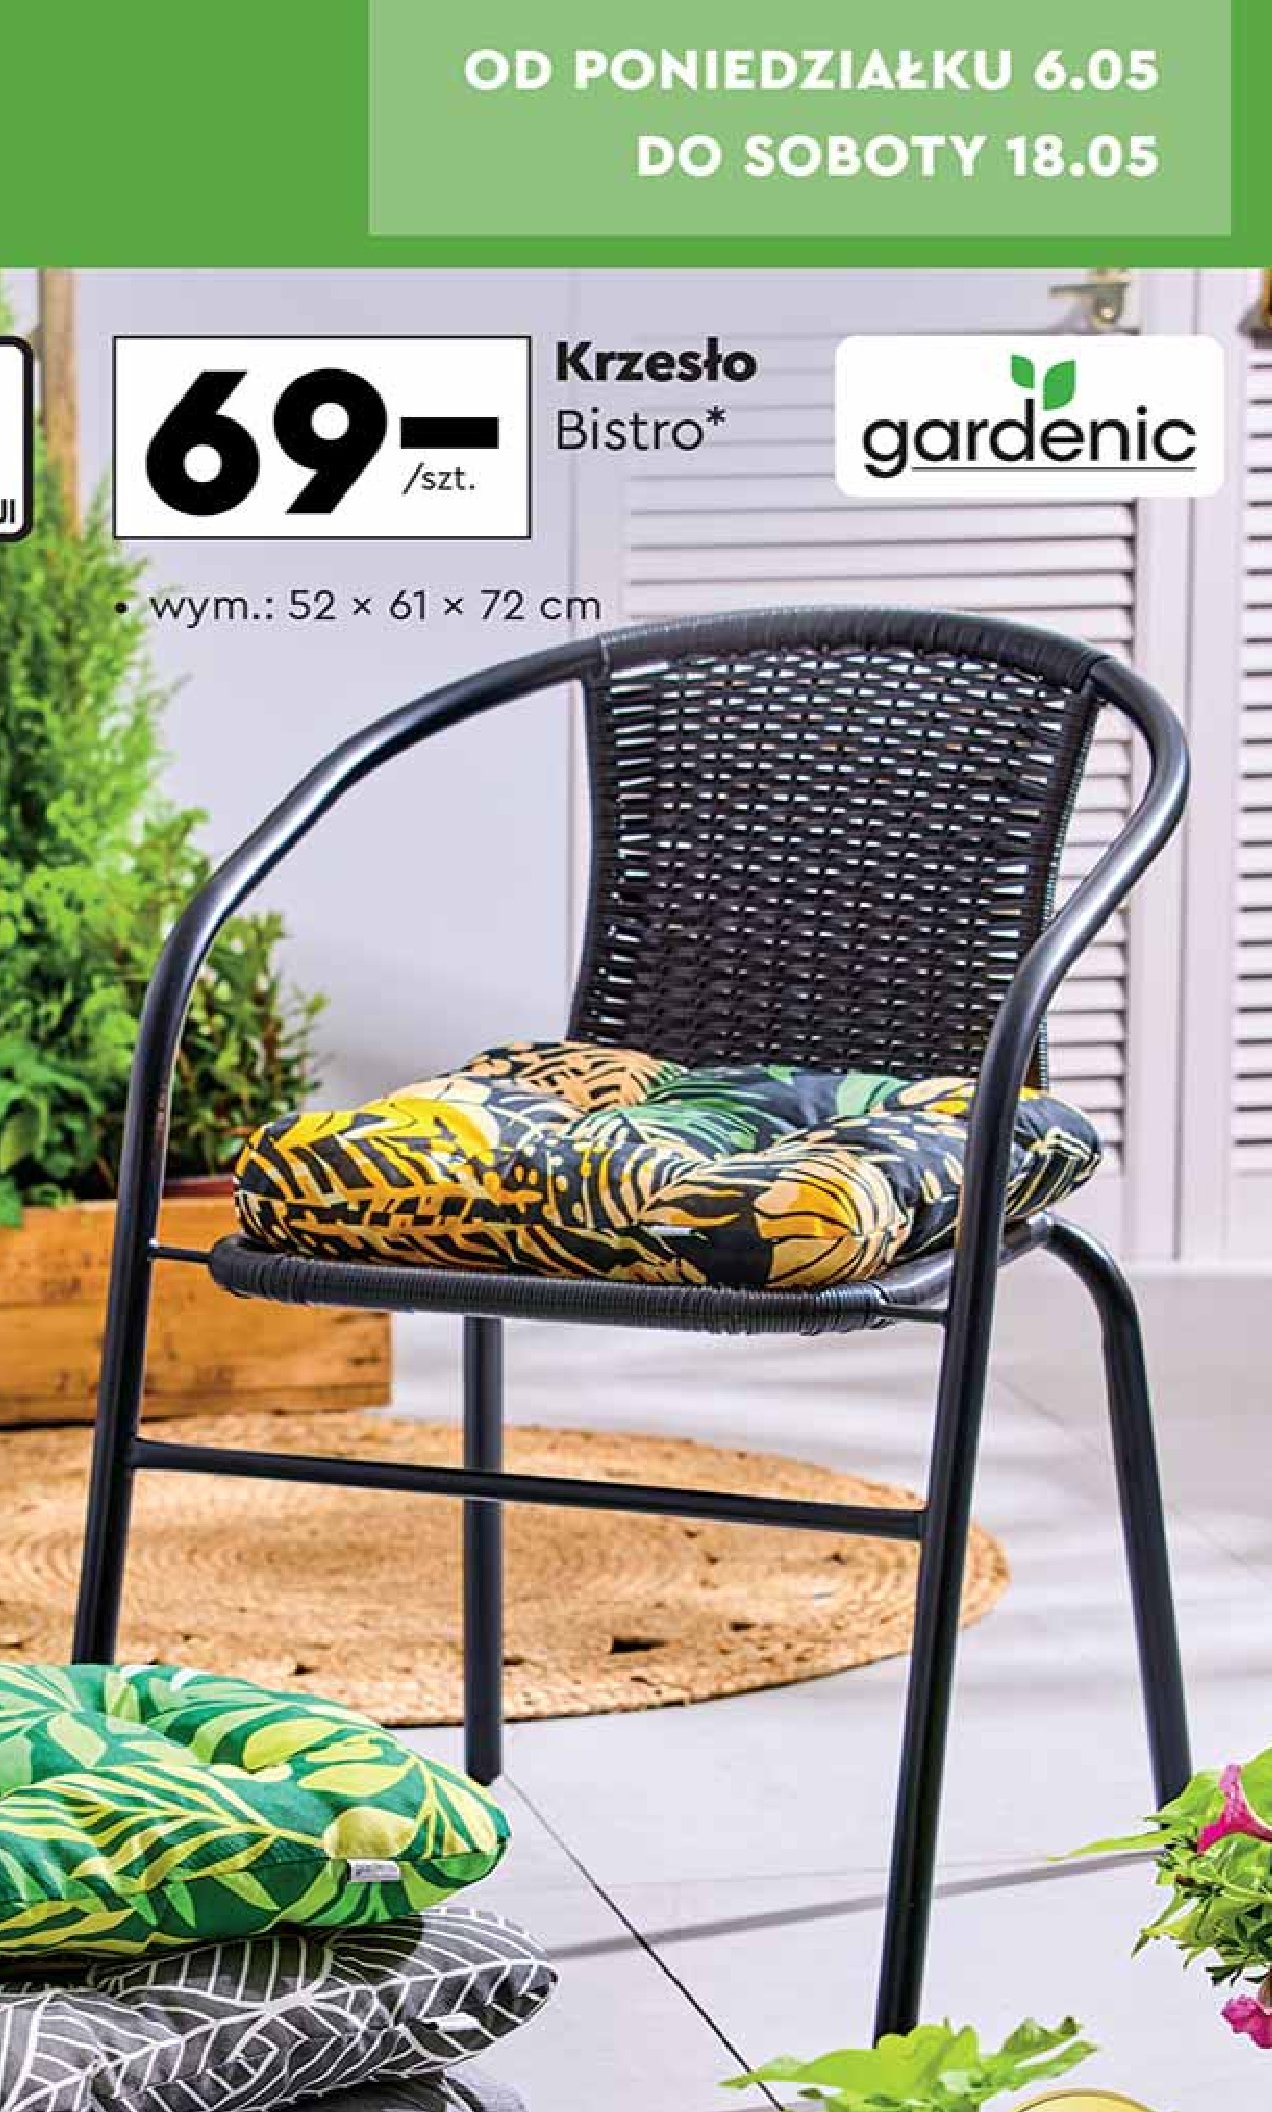 Krzesło bistro 52 x 61 x 70 cm Gardenic promocja